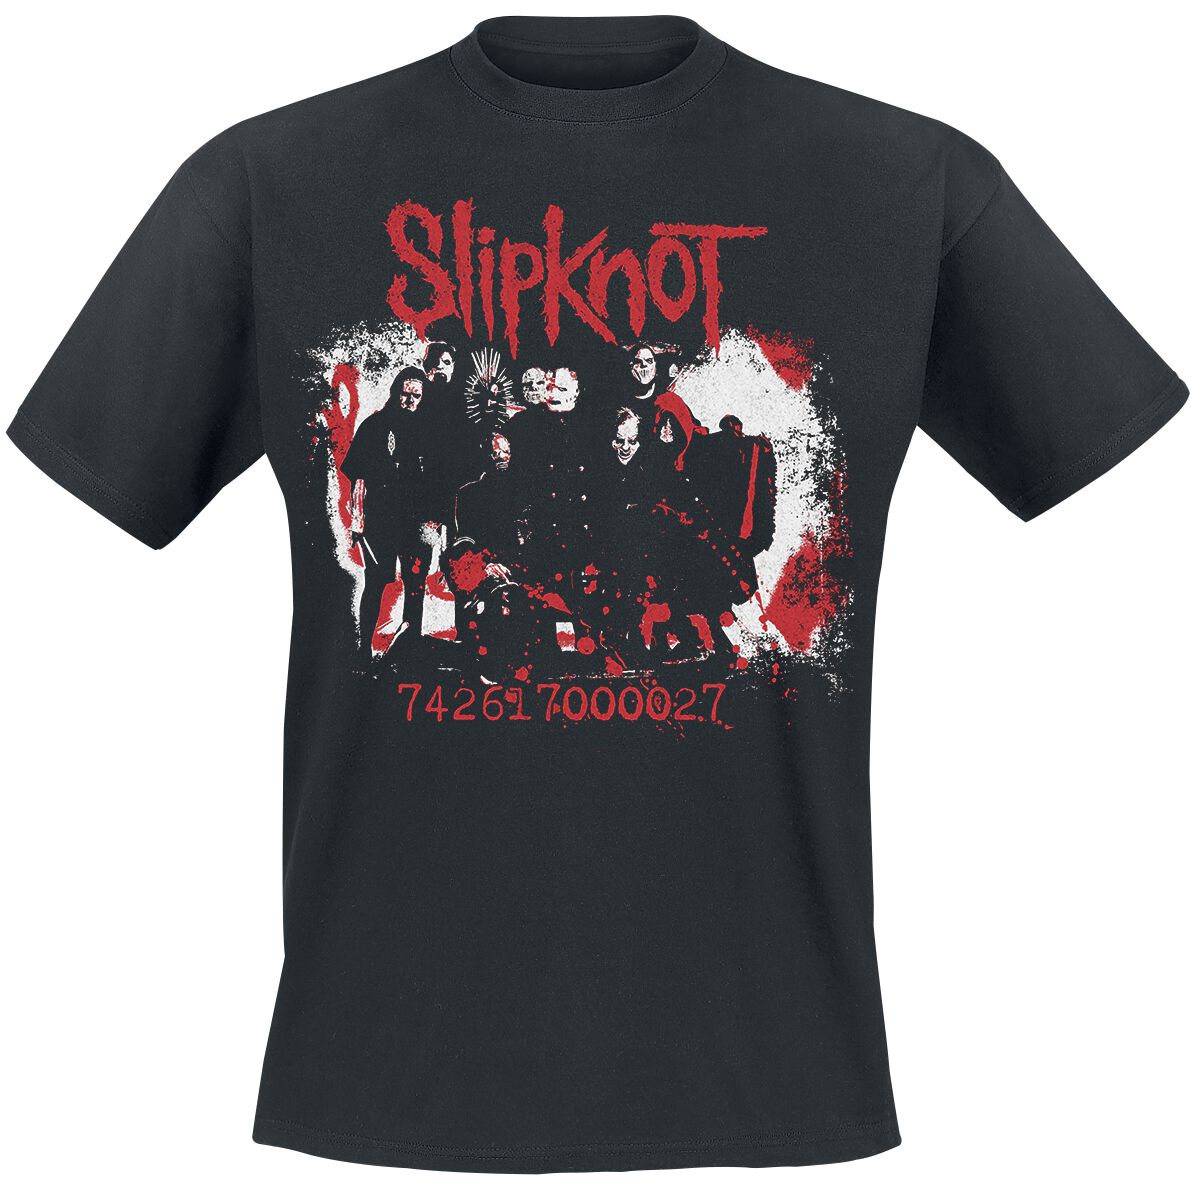 Slipknot Splatter Photo T-Shirt black